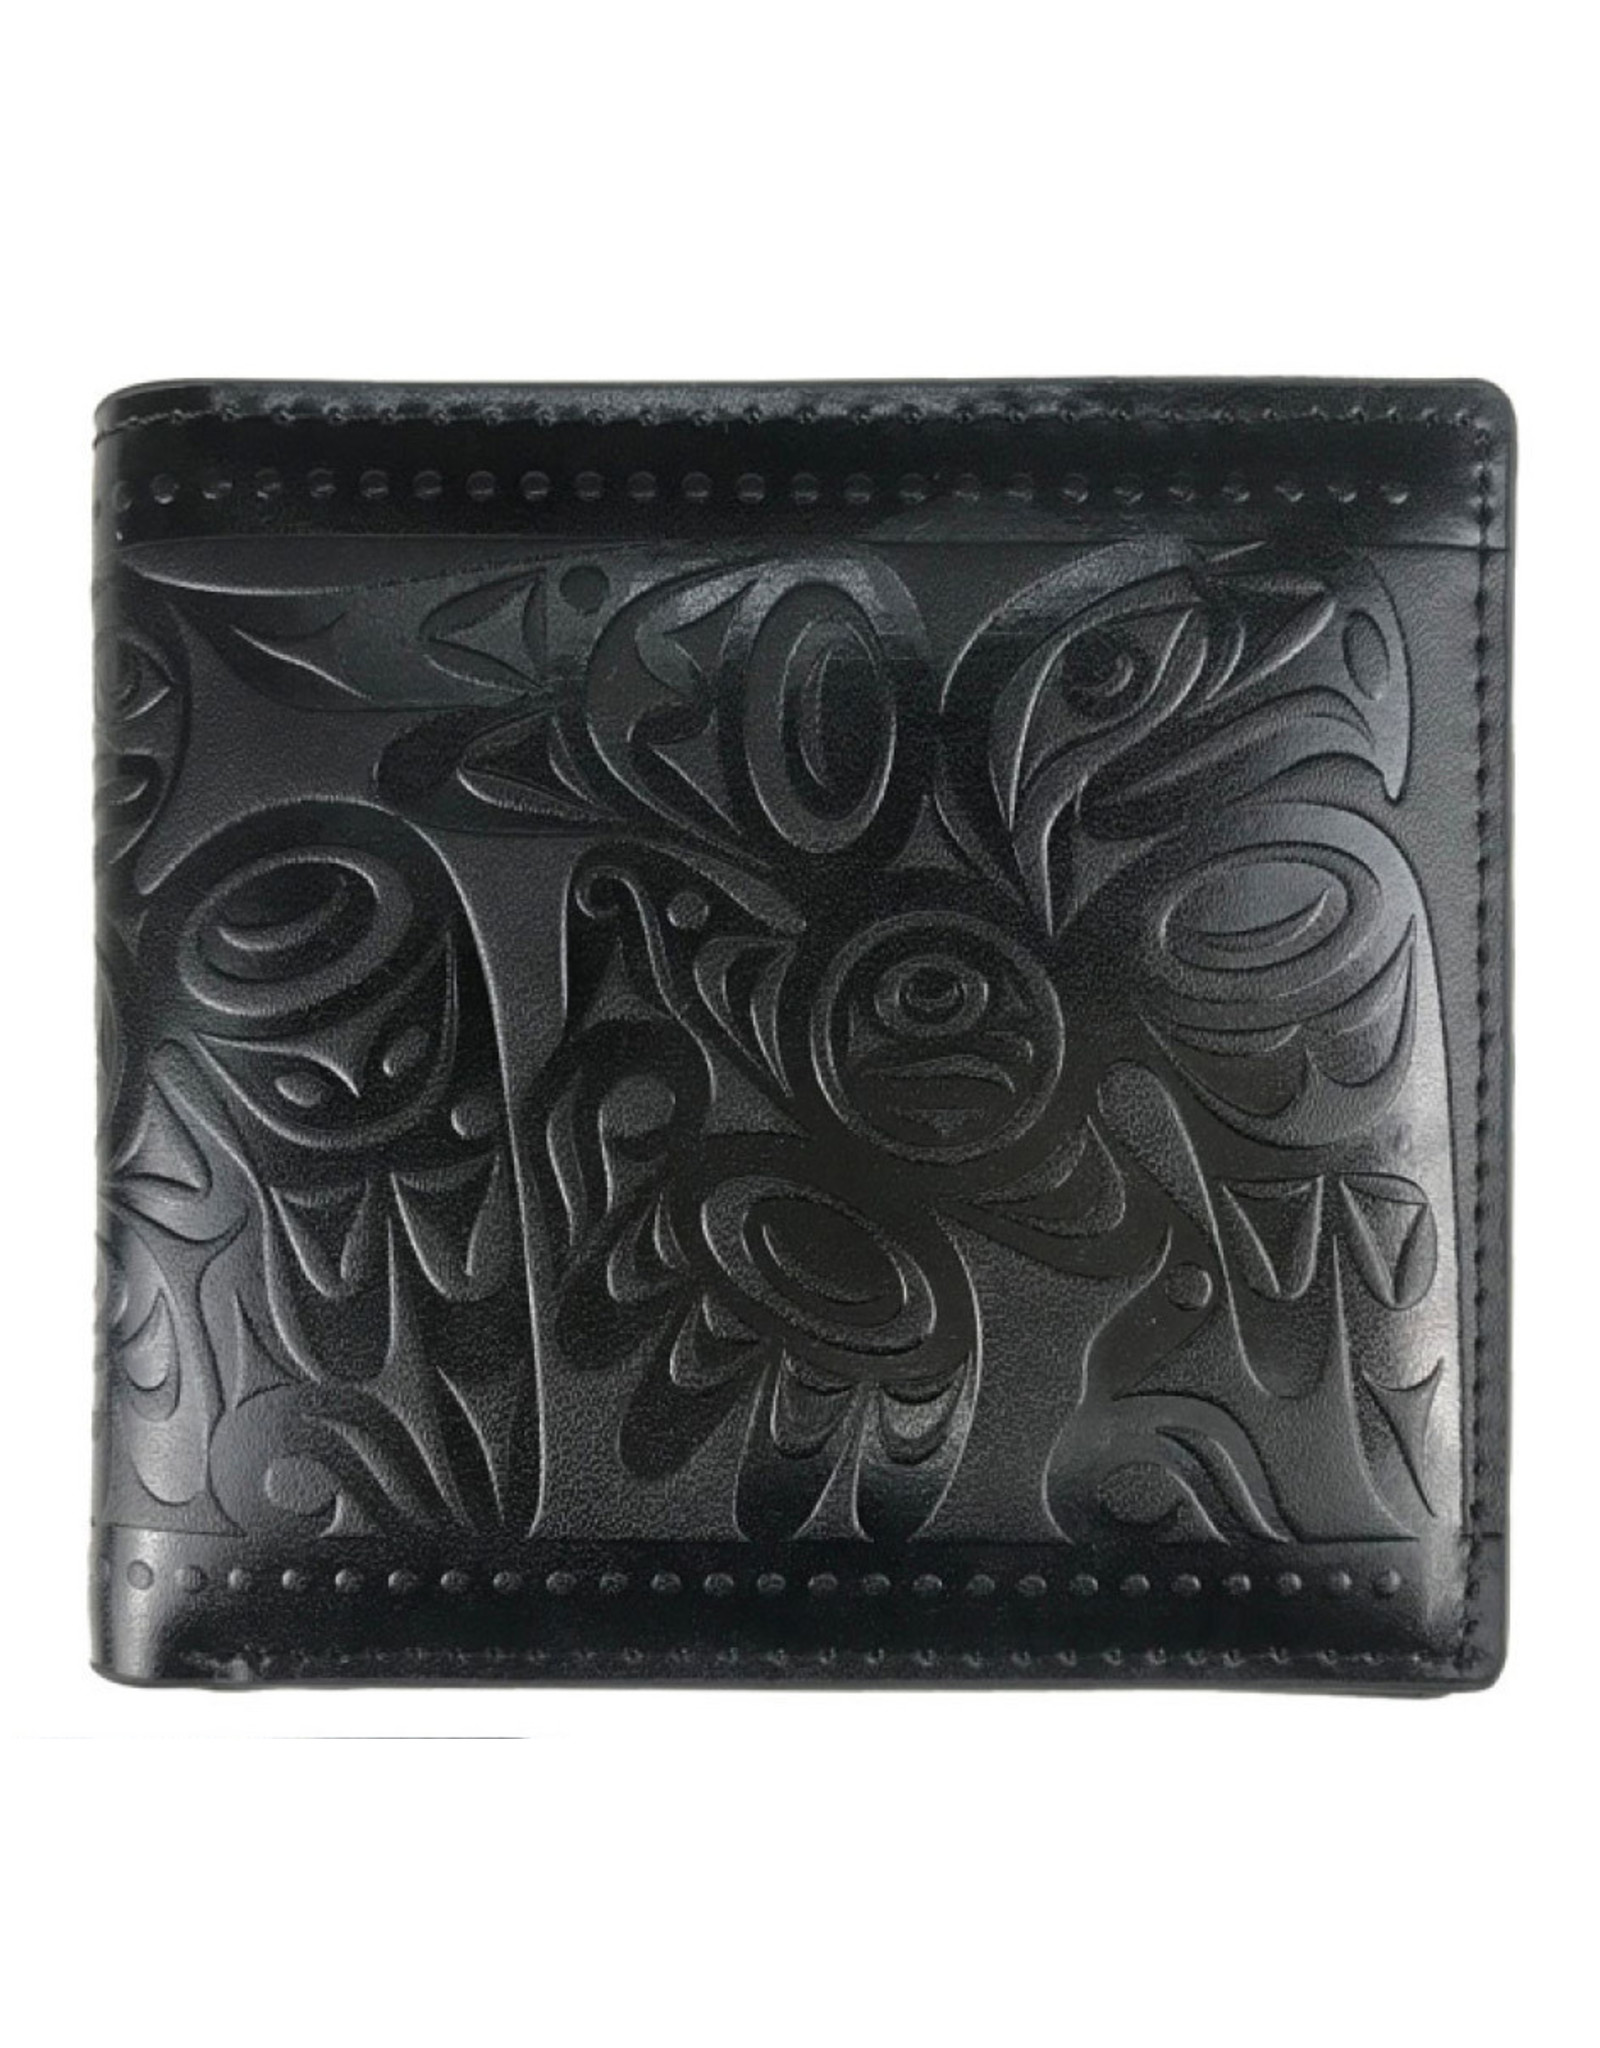 Leather Embossed Wallet  by Joe Wilson-Sxwaset - Salish Eagle - EFW13